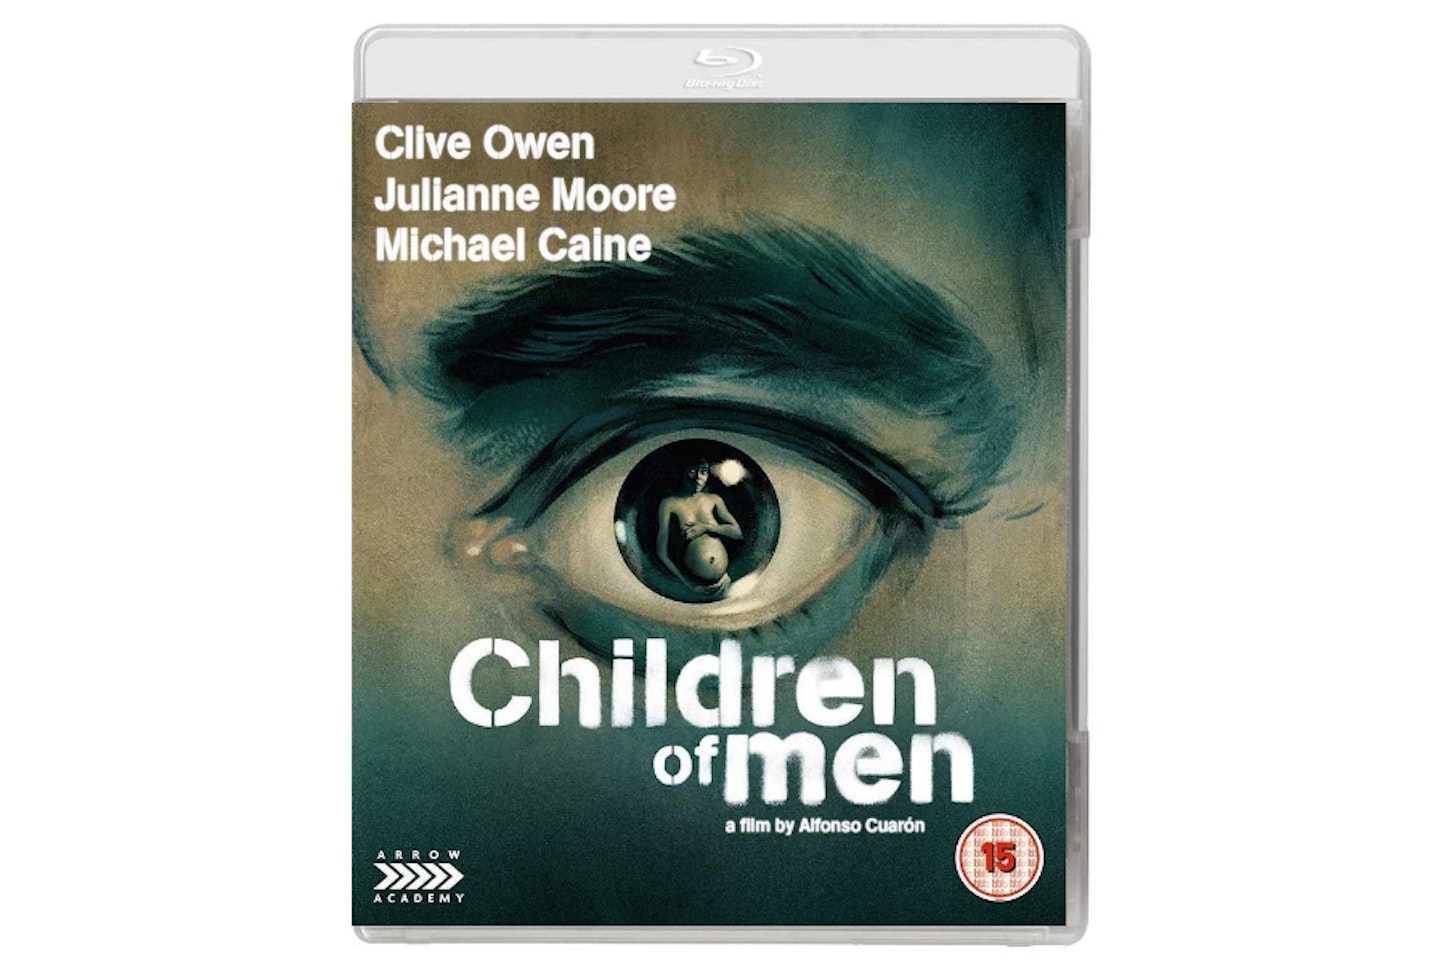 Children Of Men – Arrow, £9.99